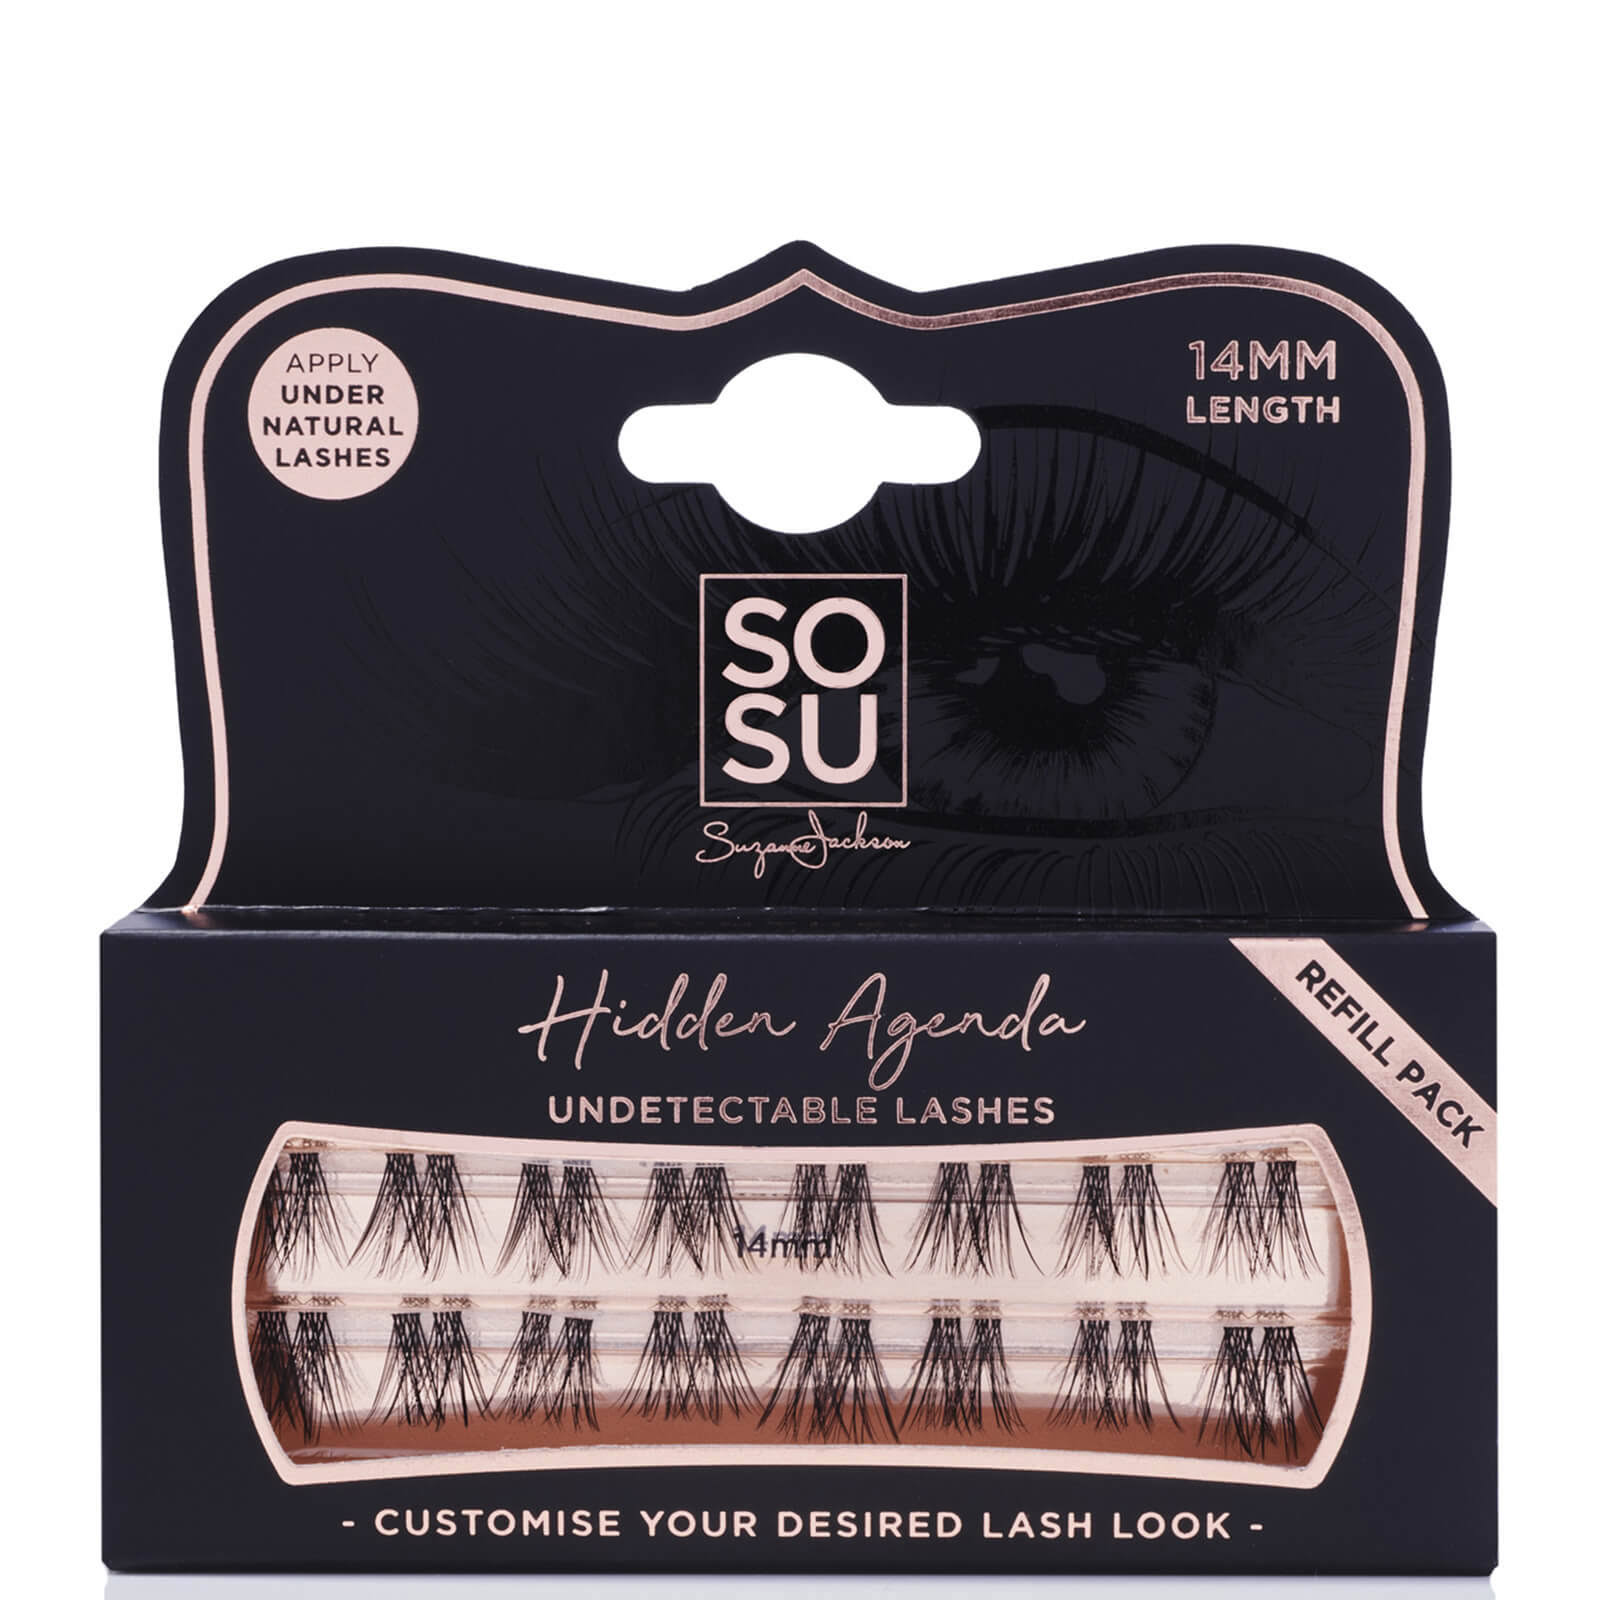 SoSu - Cosmetics Hidden Agenda Refill Pack 14mm